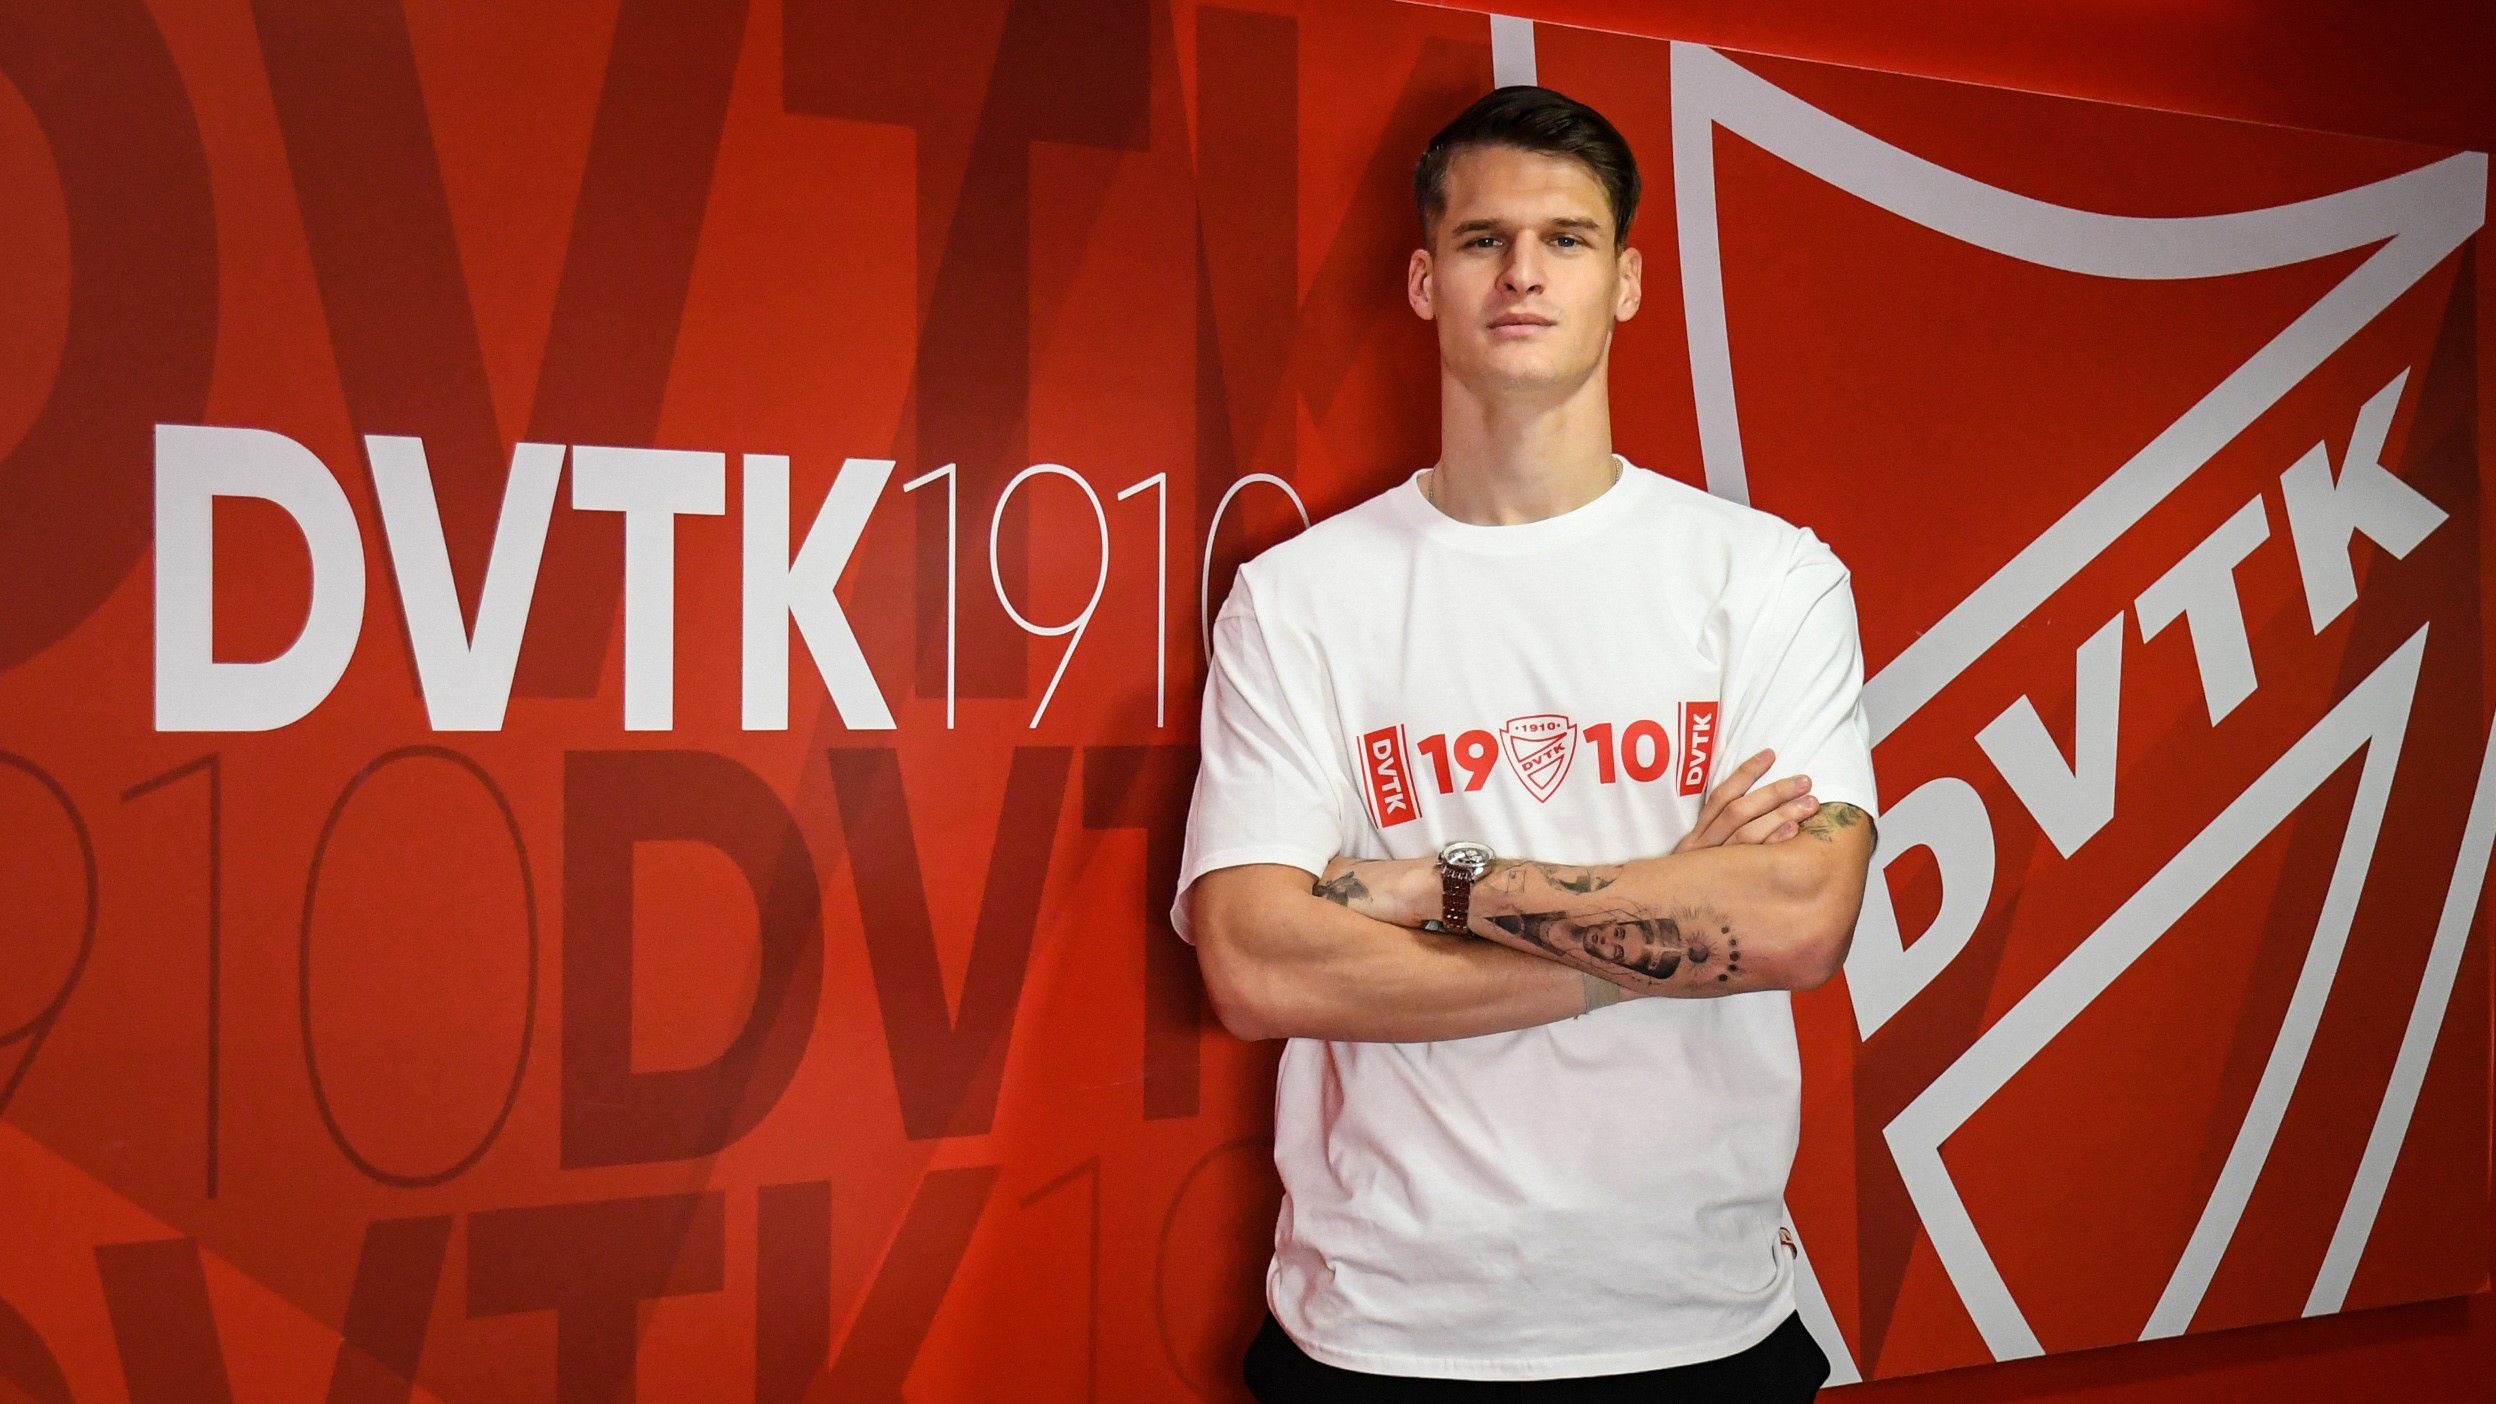 Tavasszal a DVTK címeres mezében futballozik Szabó Levente, aki a Fehérvár FC-től érkezett kölcsönbe Diósgyőrbe Fotó: dvtk.eu